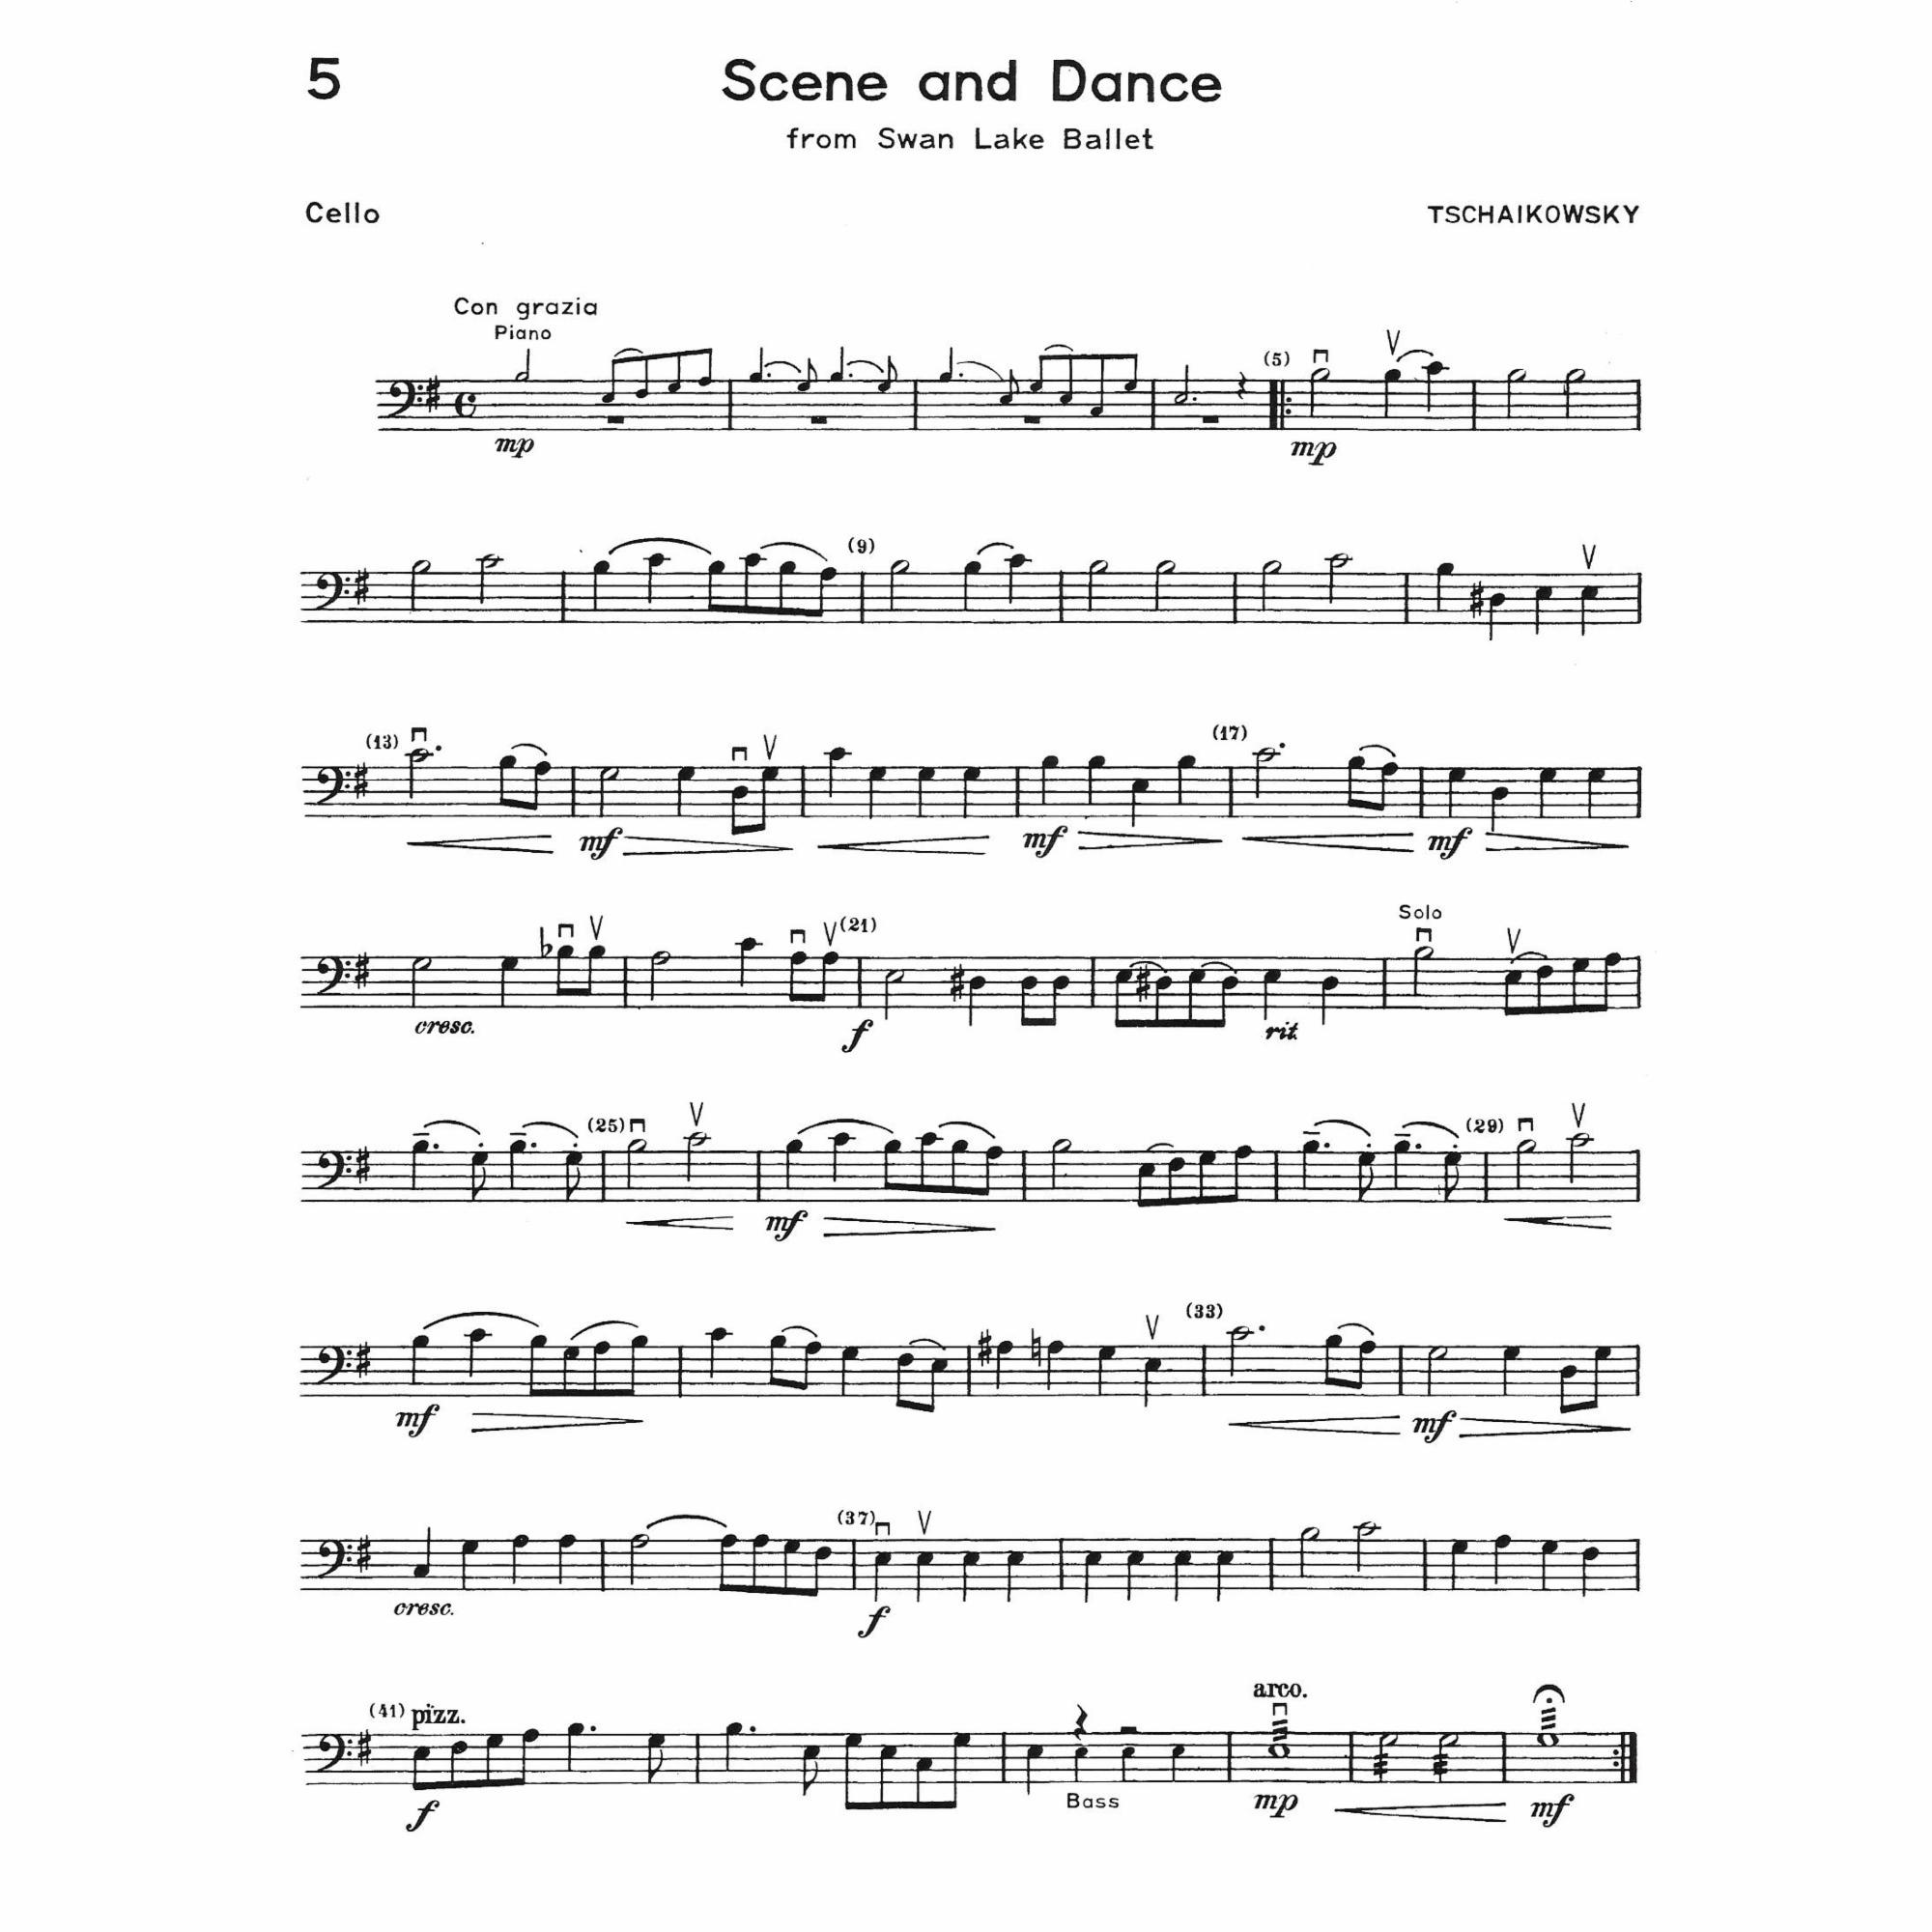 Sample: Cello (Pg. 5)